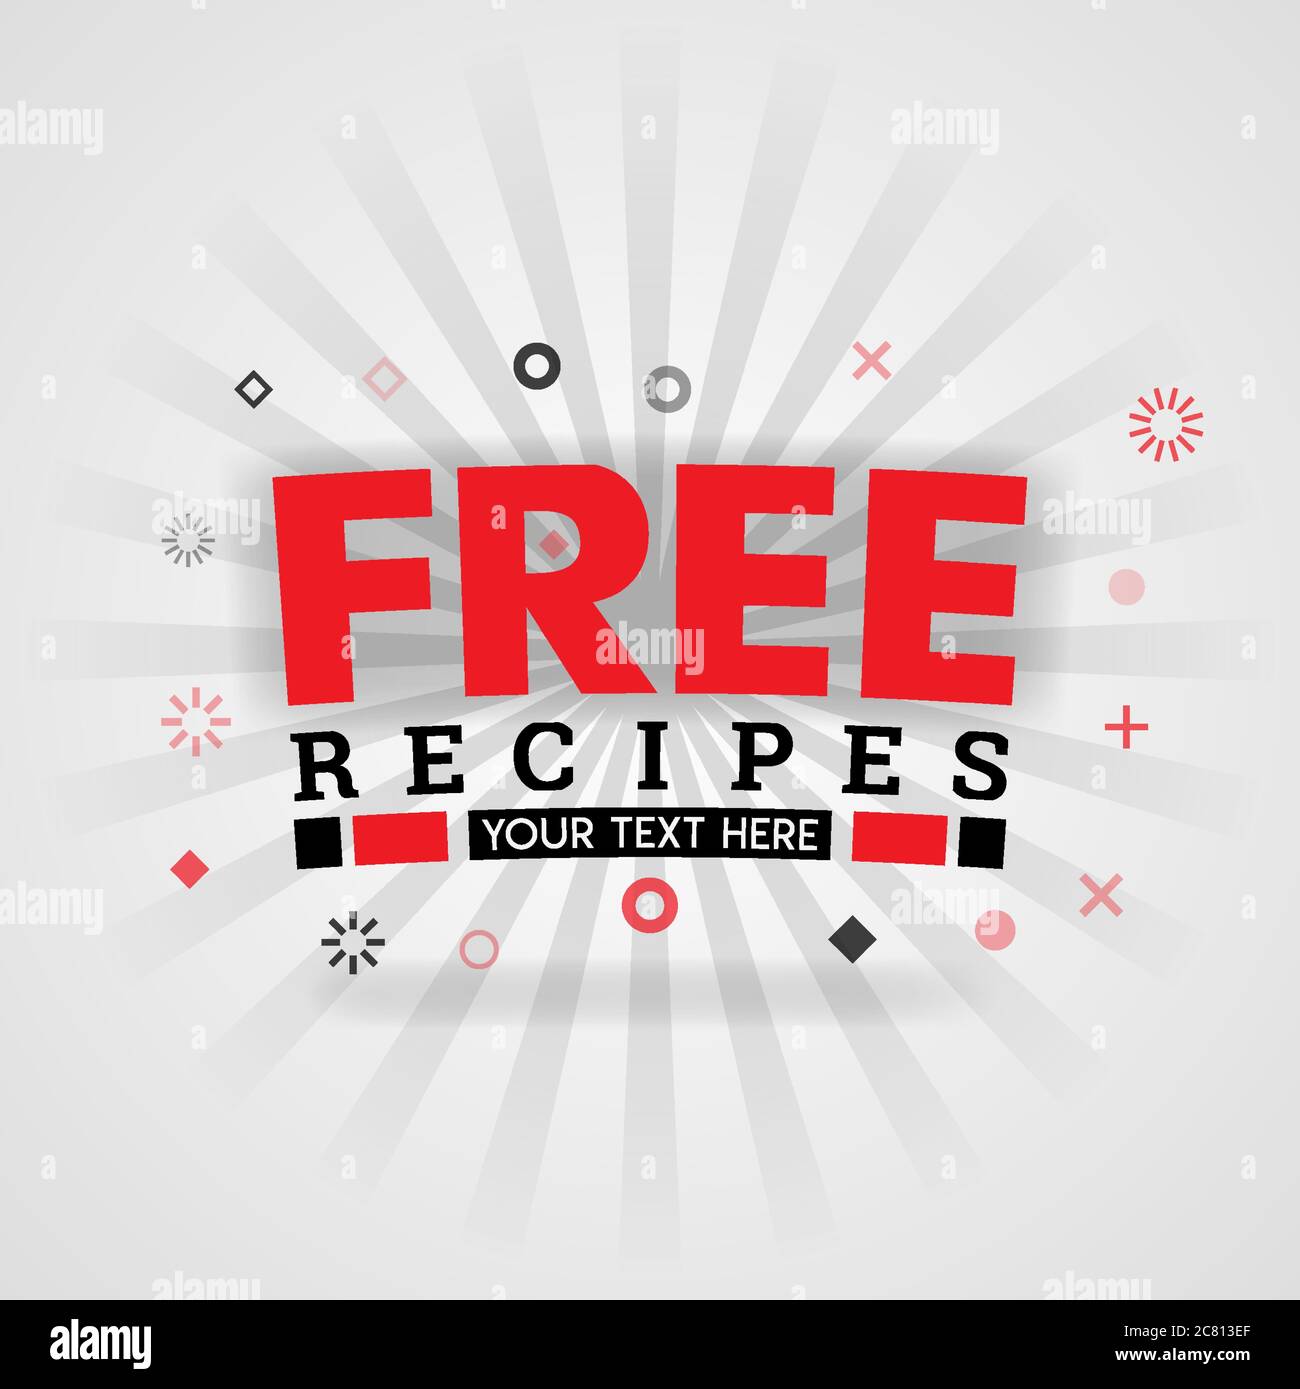 Modello per ricette gratuite di cibo libro di copertina rosso. Può essere utilizzato per poster e volantini pubblicitari alimentari, promozione post sui social media, marketing online. Cibo i Illustrazione Vettoriale